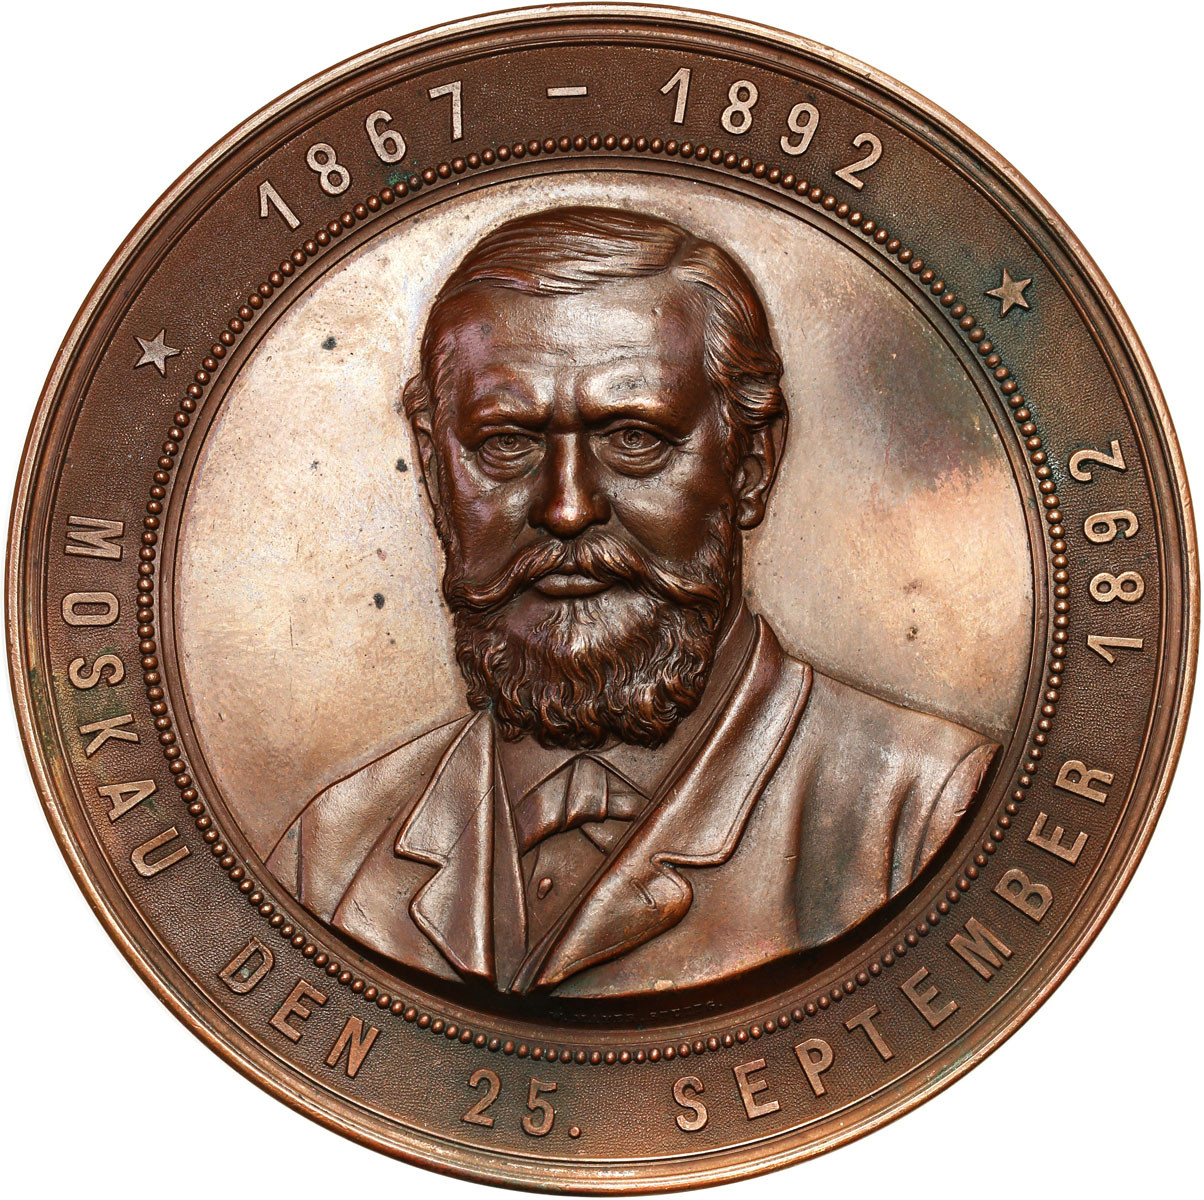 Rosja, Aleksander III. Medal 1892 Conrad Bansa, brąz